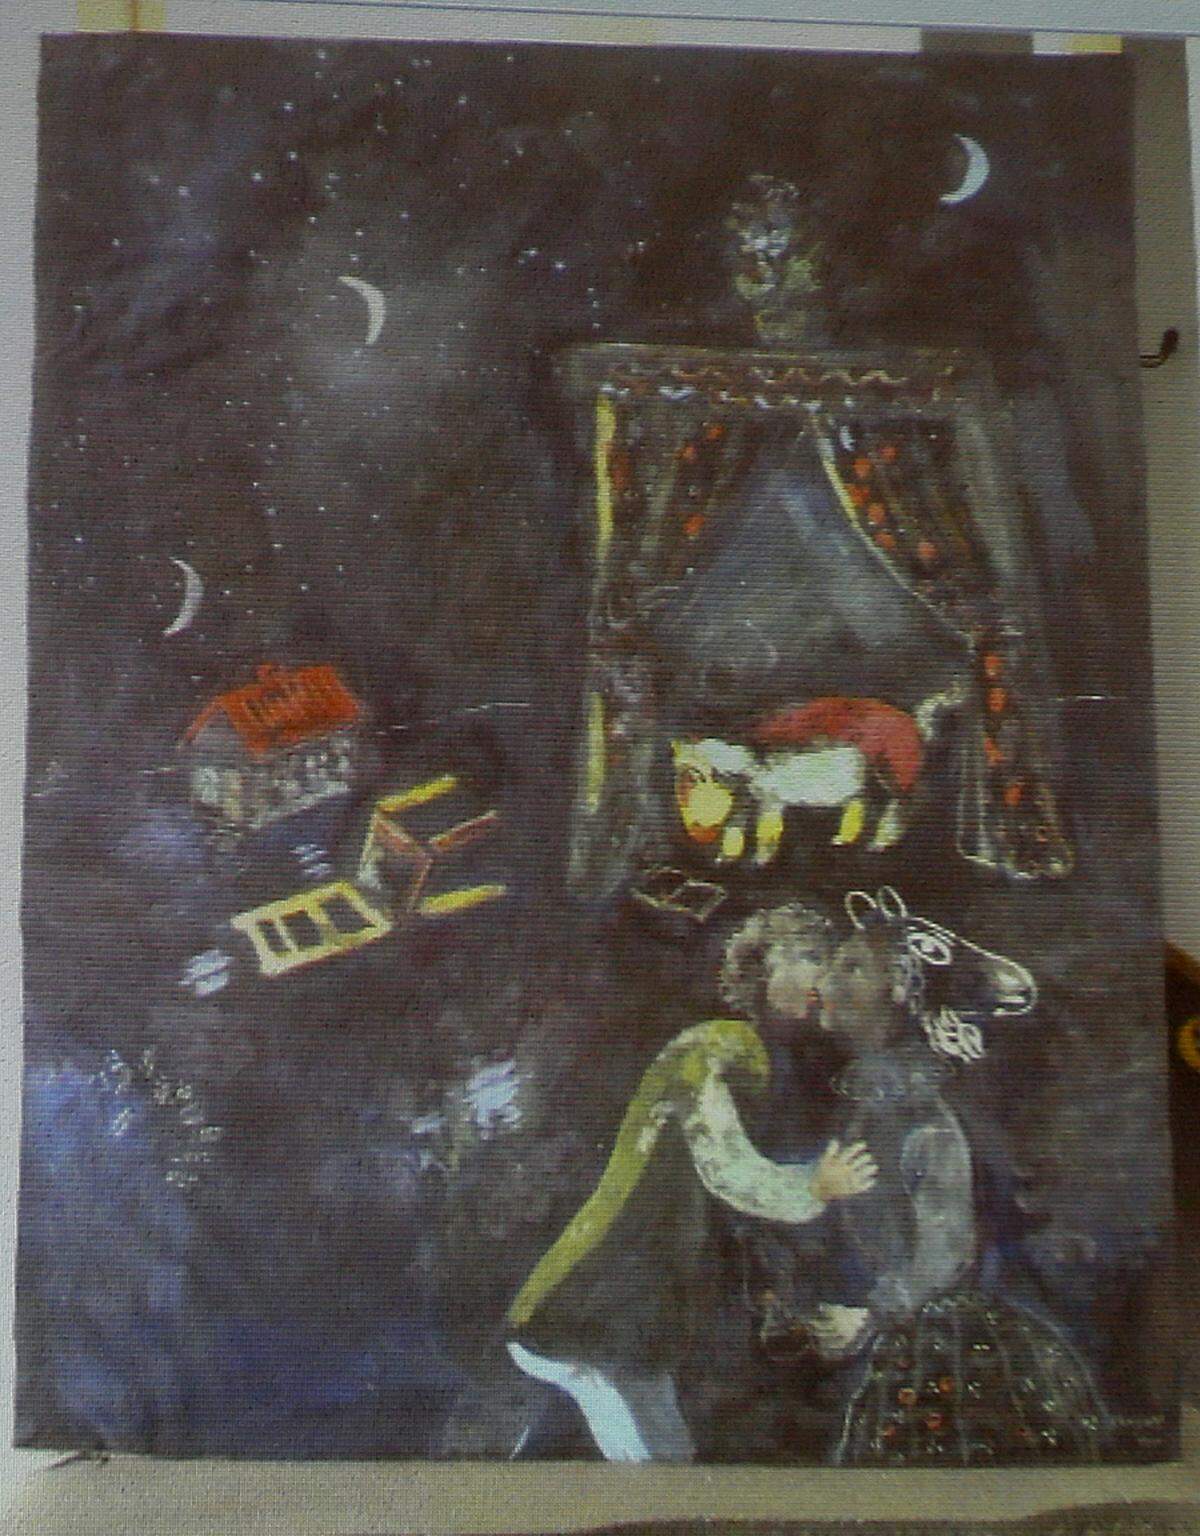 Marc Chagall (1887-1985), Gouache einer allegorischen Szene, nicht im Werkverzeichnis enthalten, Herkunft nicht eindeutig bestimmt. Die Recherche dürfte sehr, sehr schwierig werden, so Hoffmann.